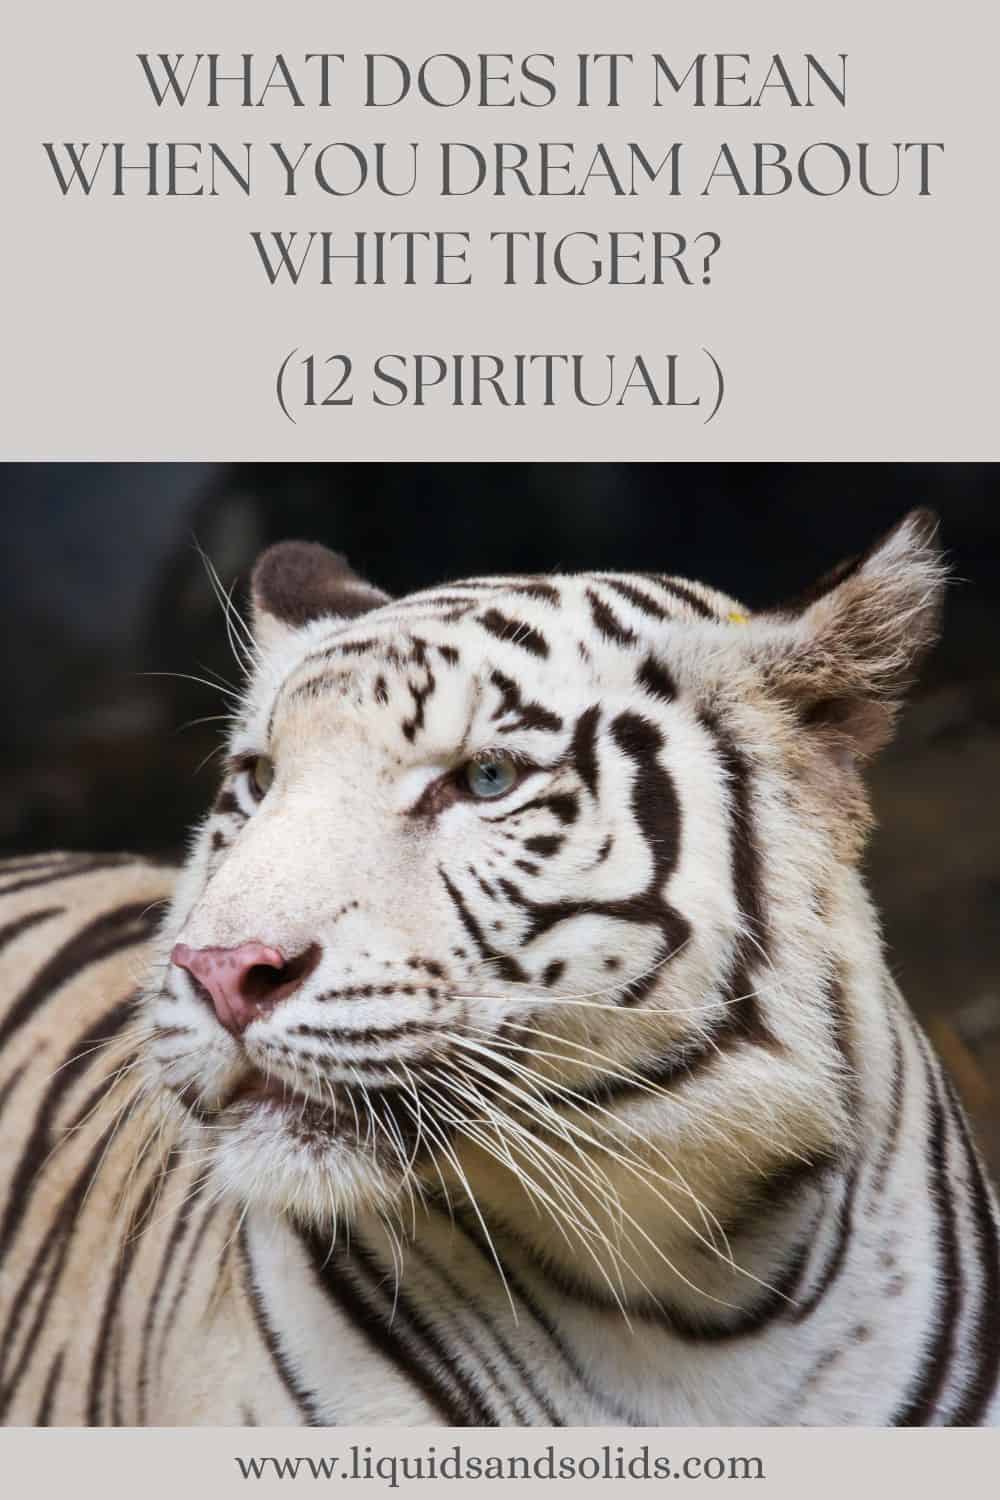  Soñar co tigre branco? (12 significados espirituais)